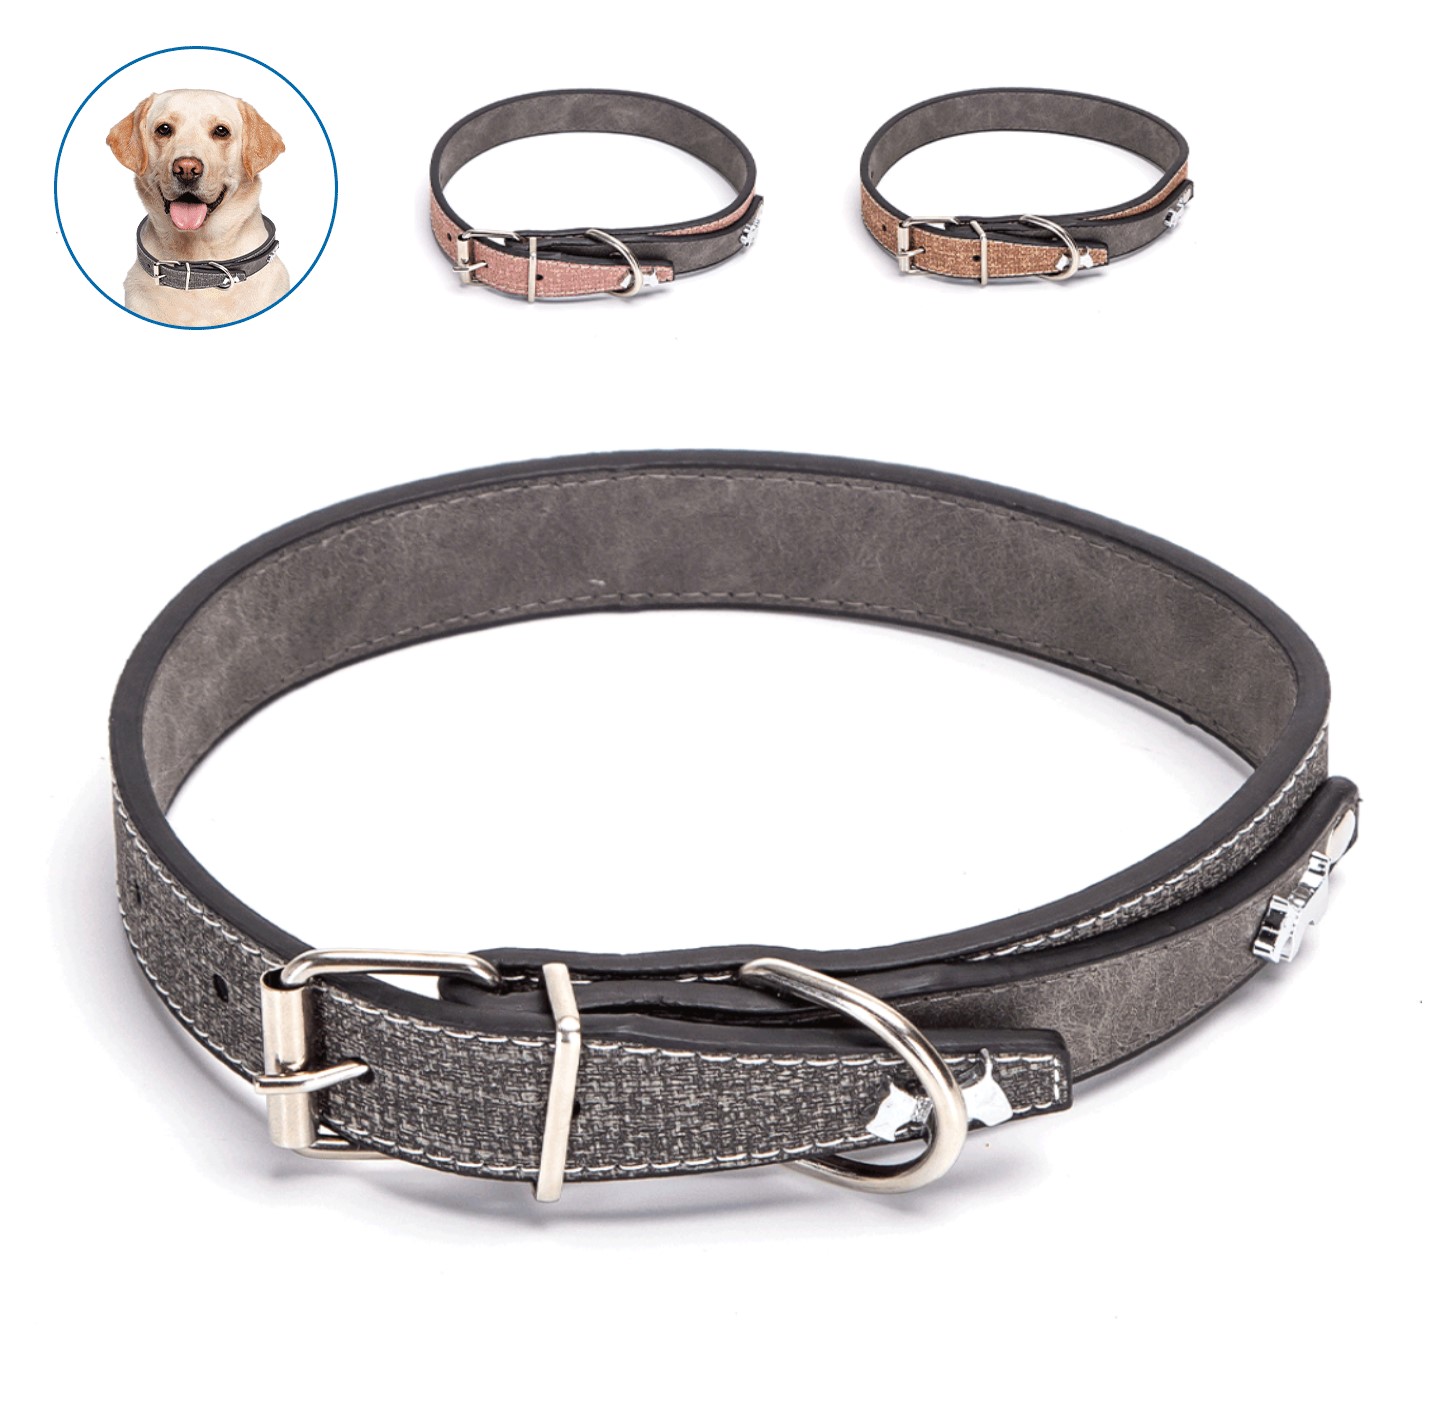 Nobleza Luxe hondenhalsband - kunstleder halsband voor honden - roze - Halsband met bedels - lengte 52 cm - M